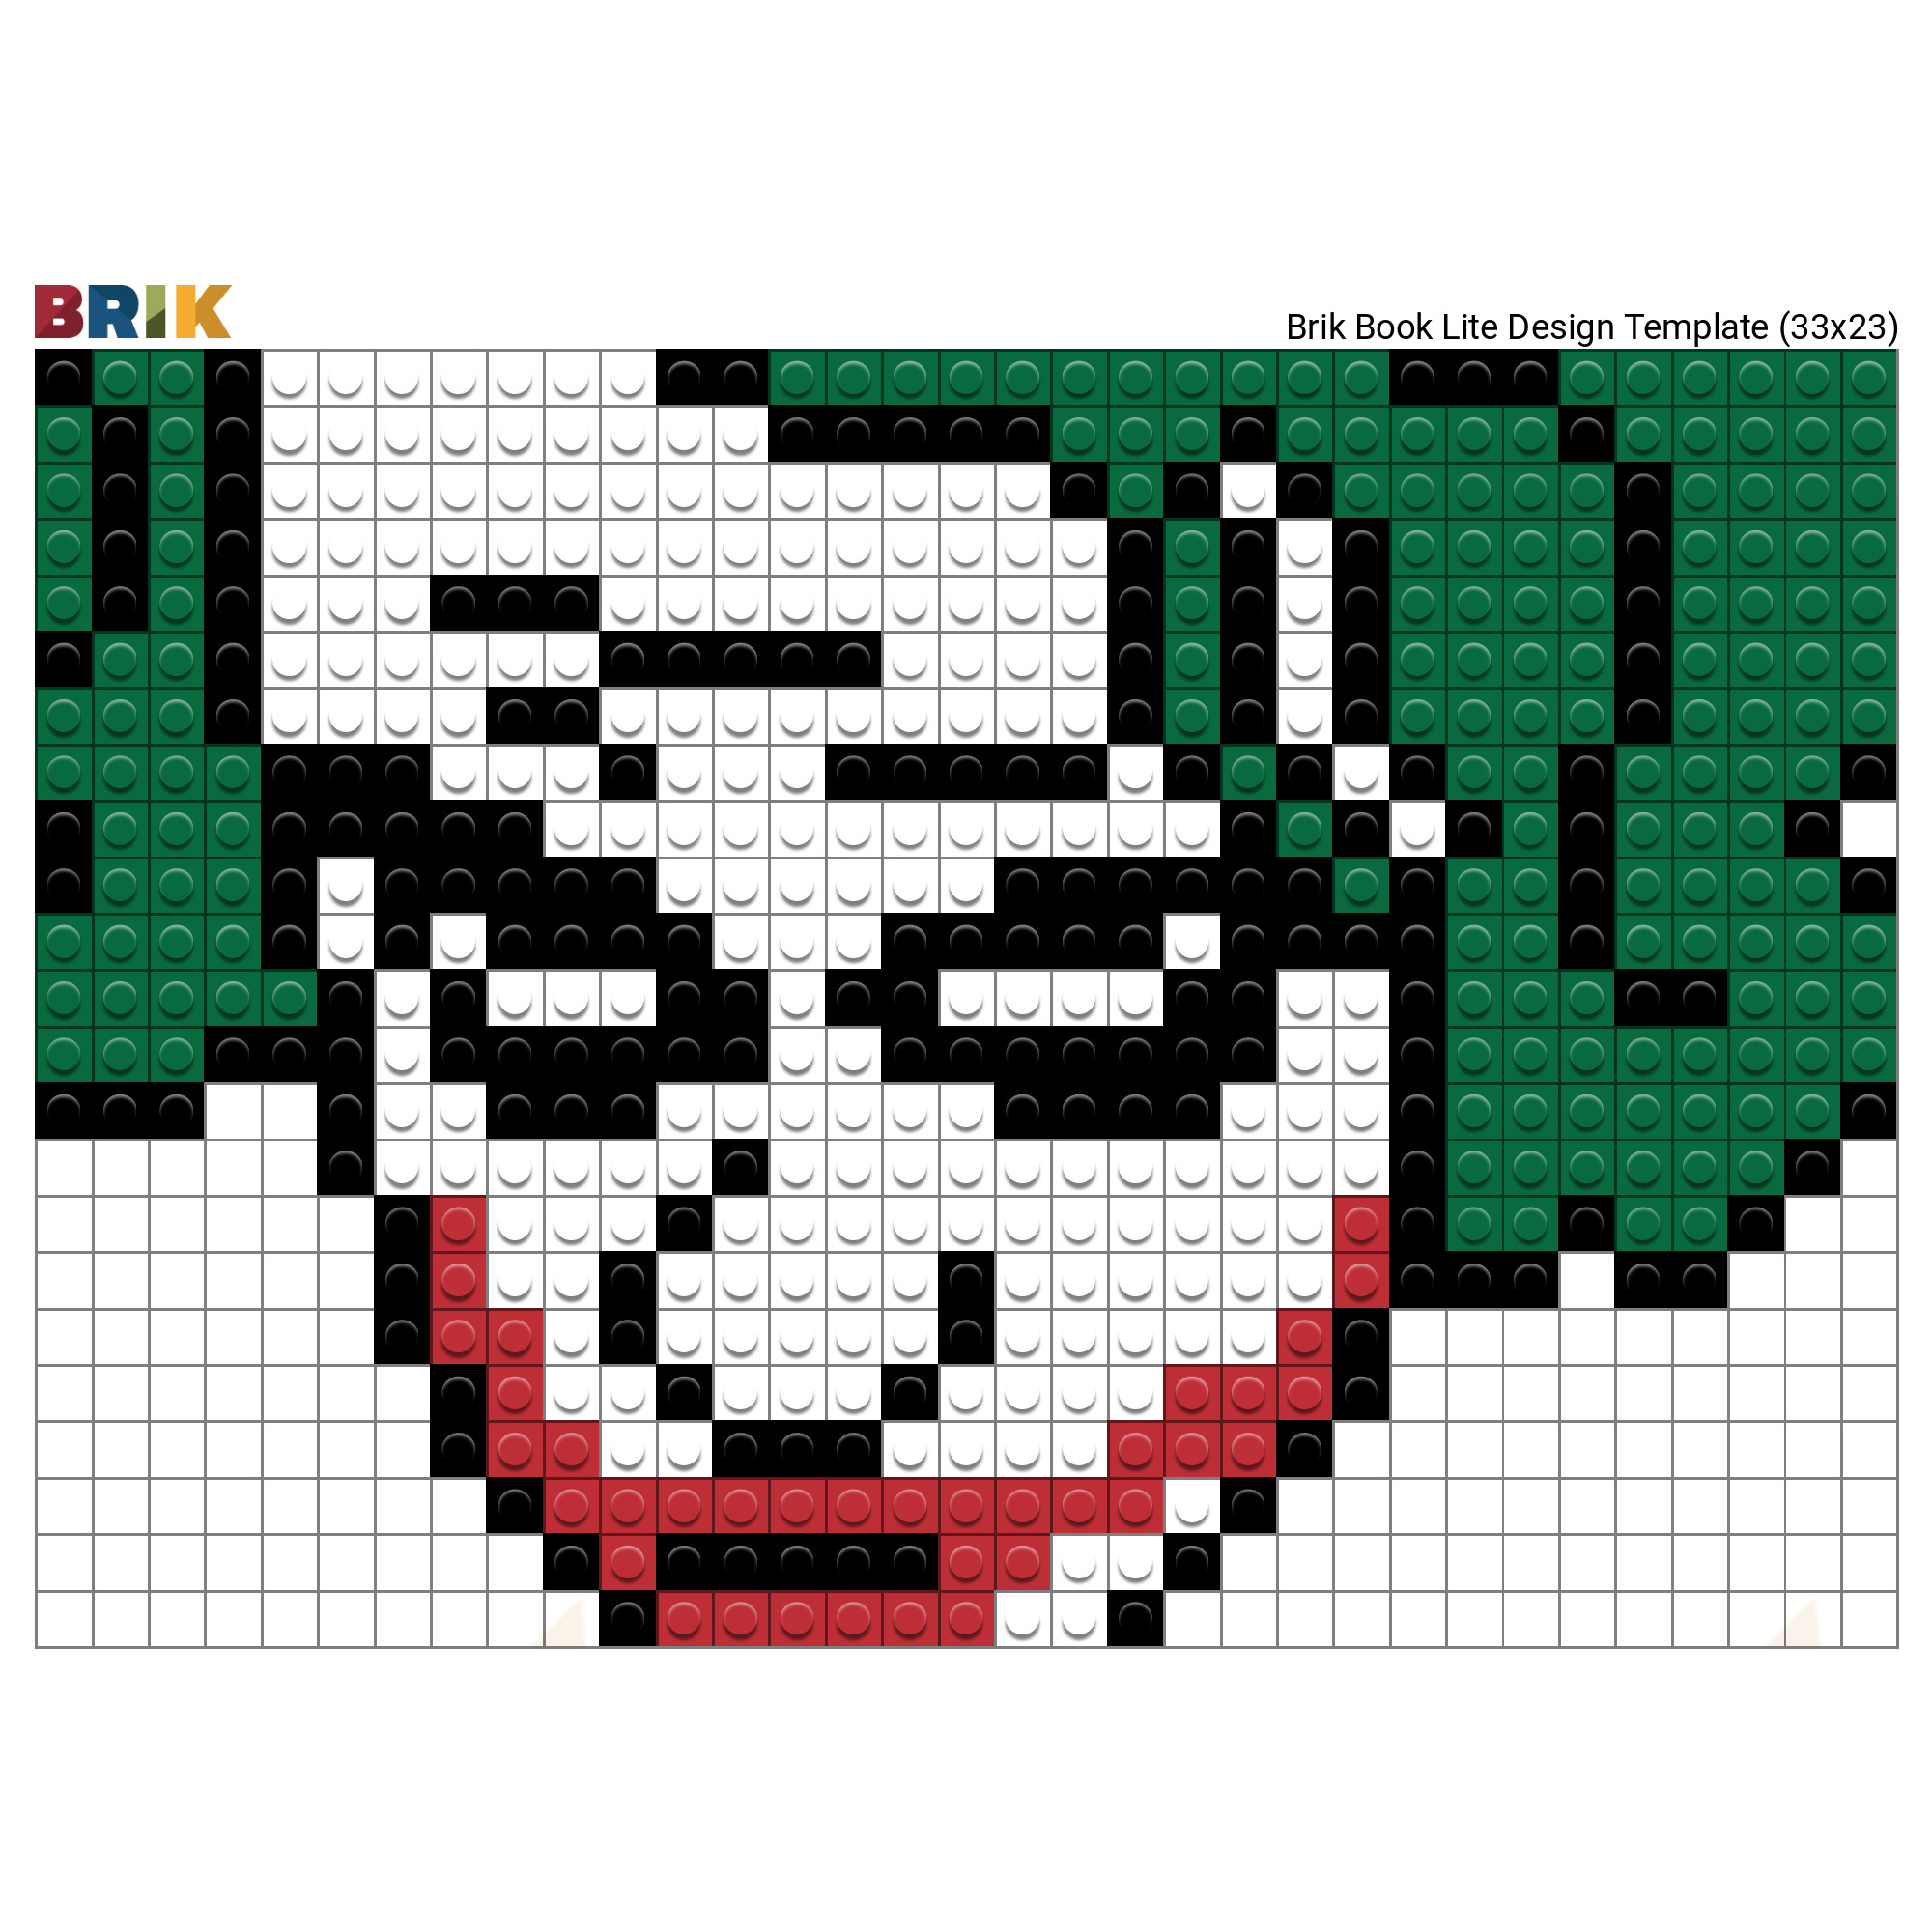 Totem Coringa em pixel art | The Joker